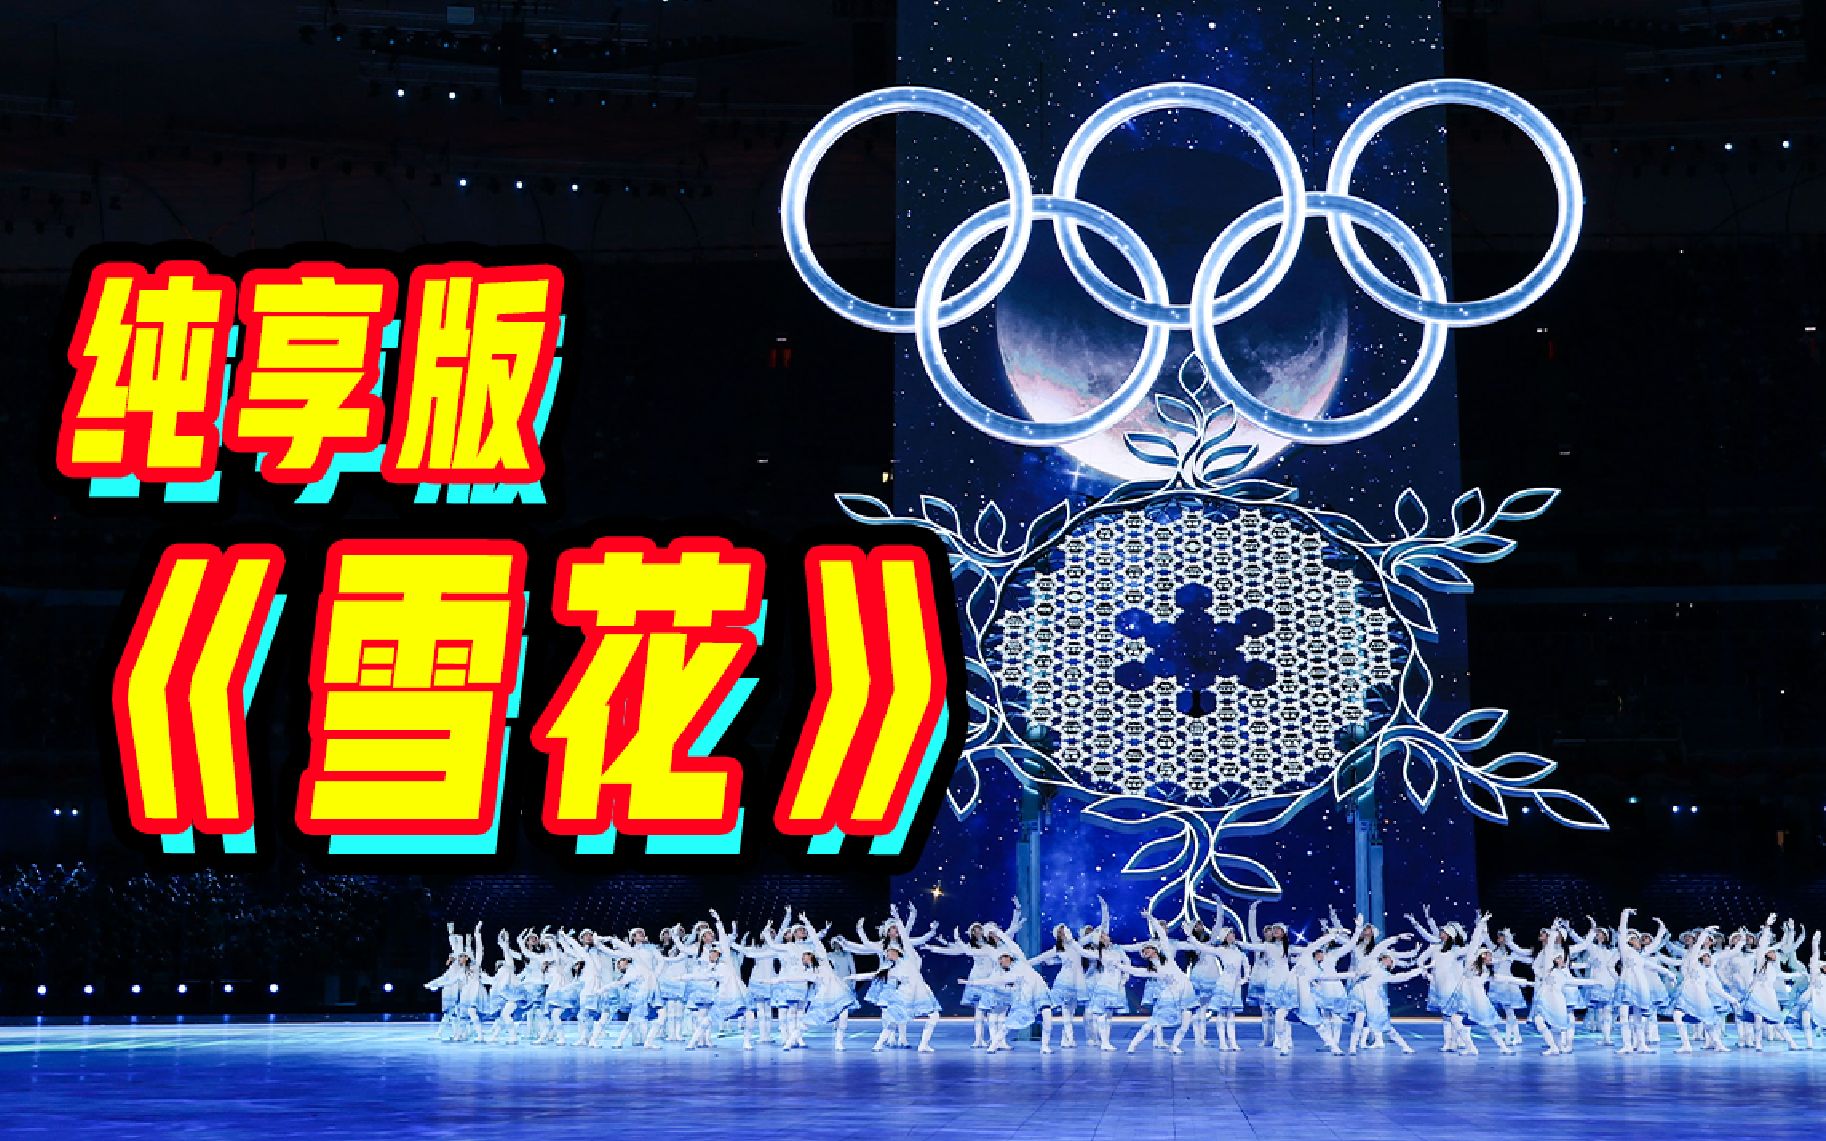 【纯享版】北京冬奥会开幕式主题歌《雪花》